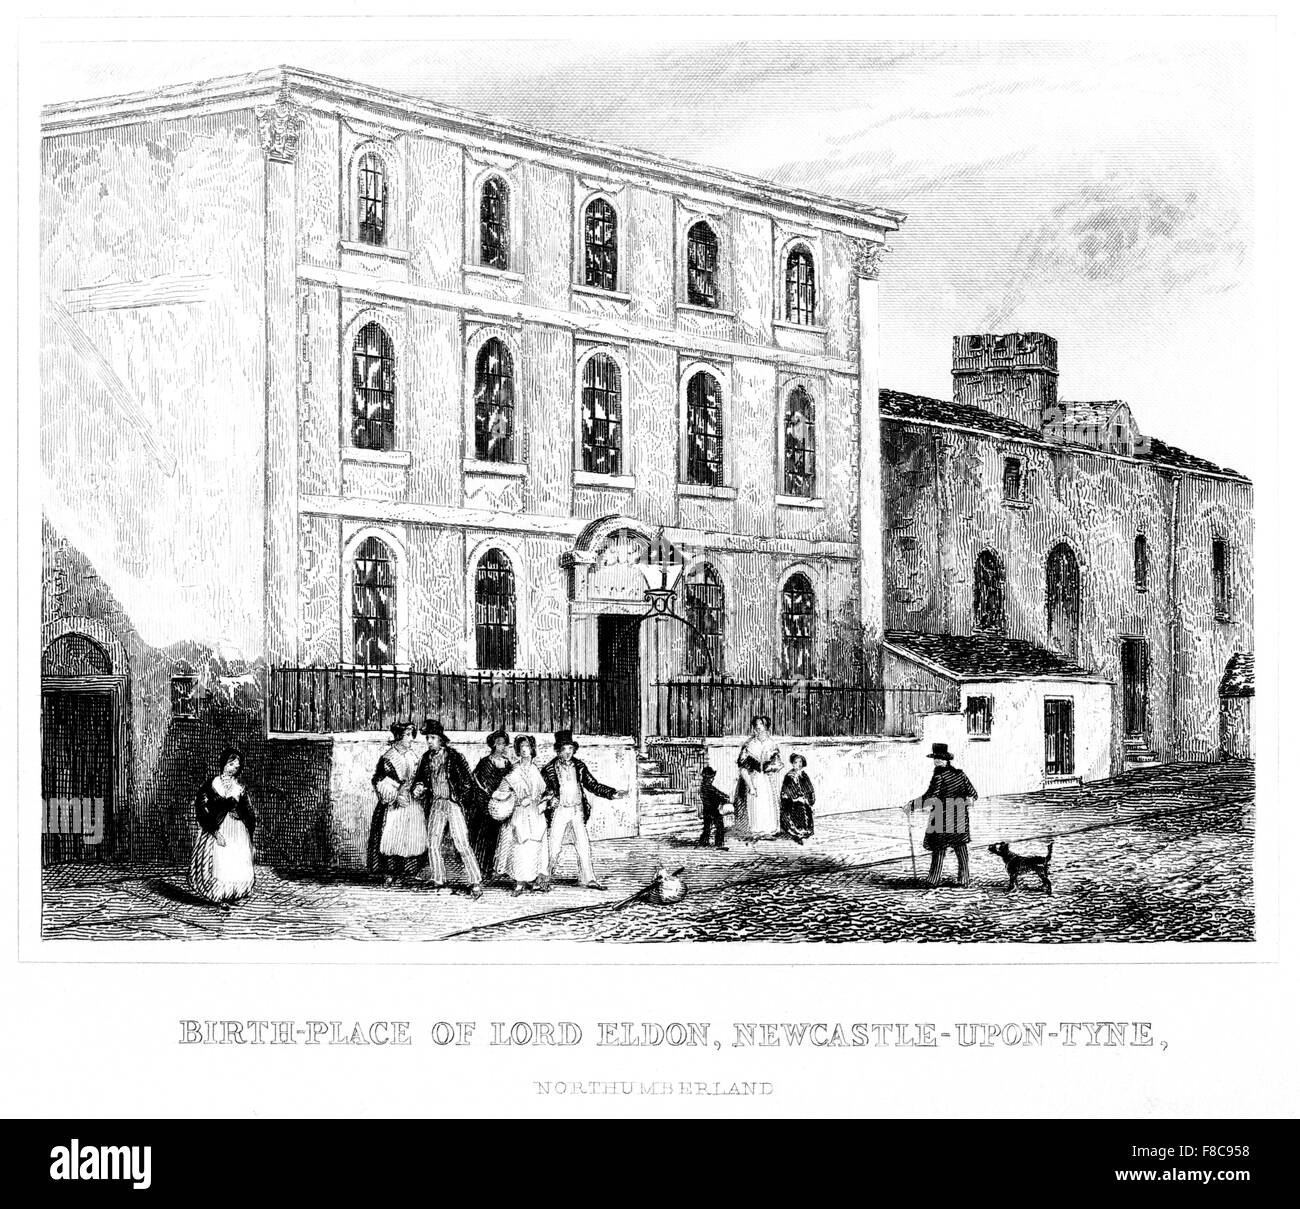 Una incisione del Birth-Place di Lord Eldon, Newcastle - al momento - Tyne, Northumberland scansionato da un libro stampato intorno al 1850. Foto Stock